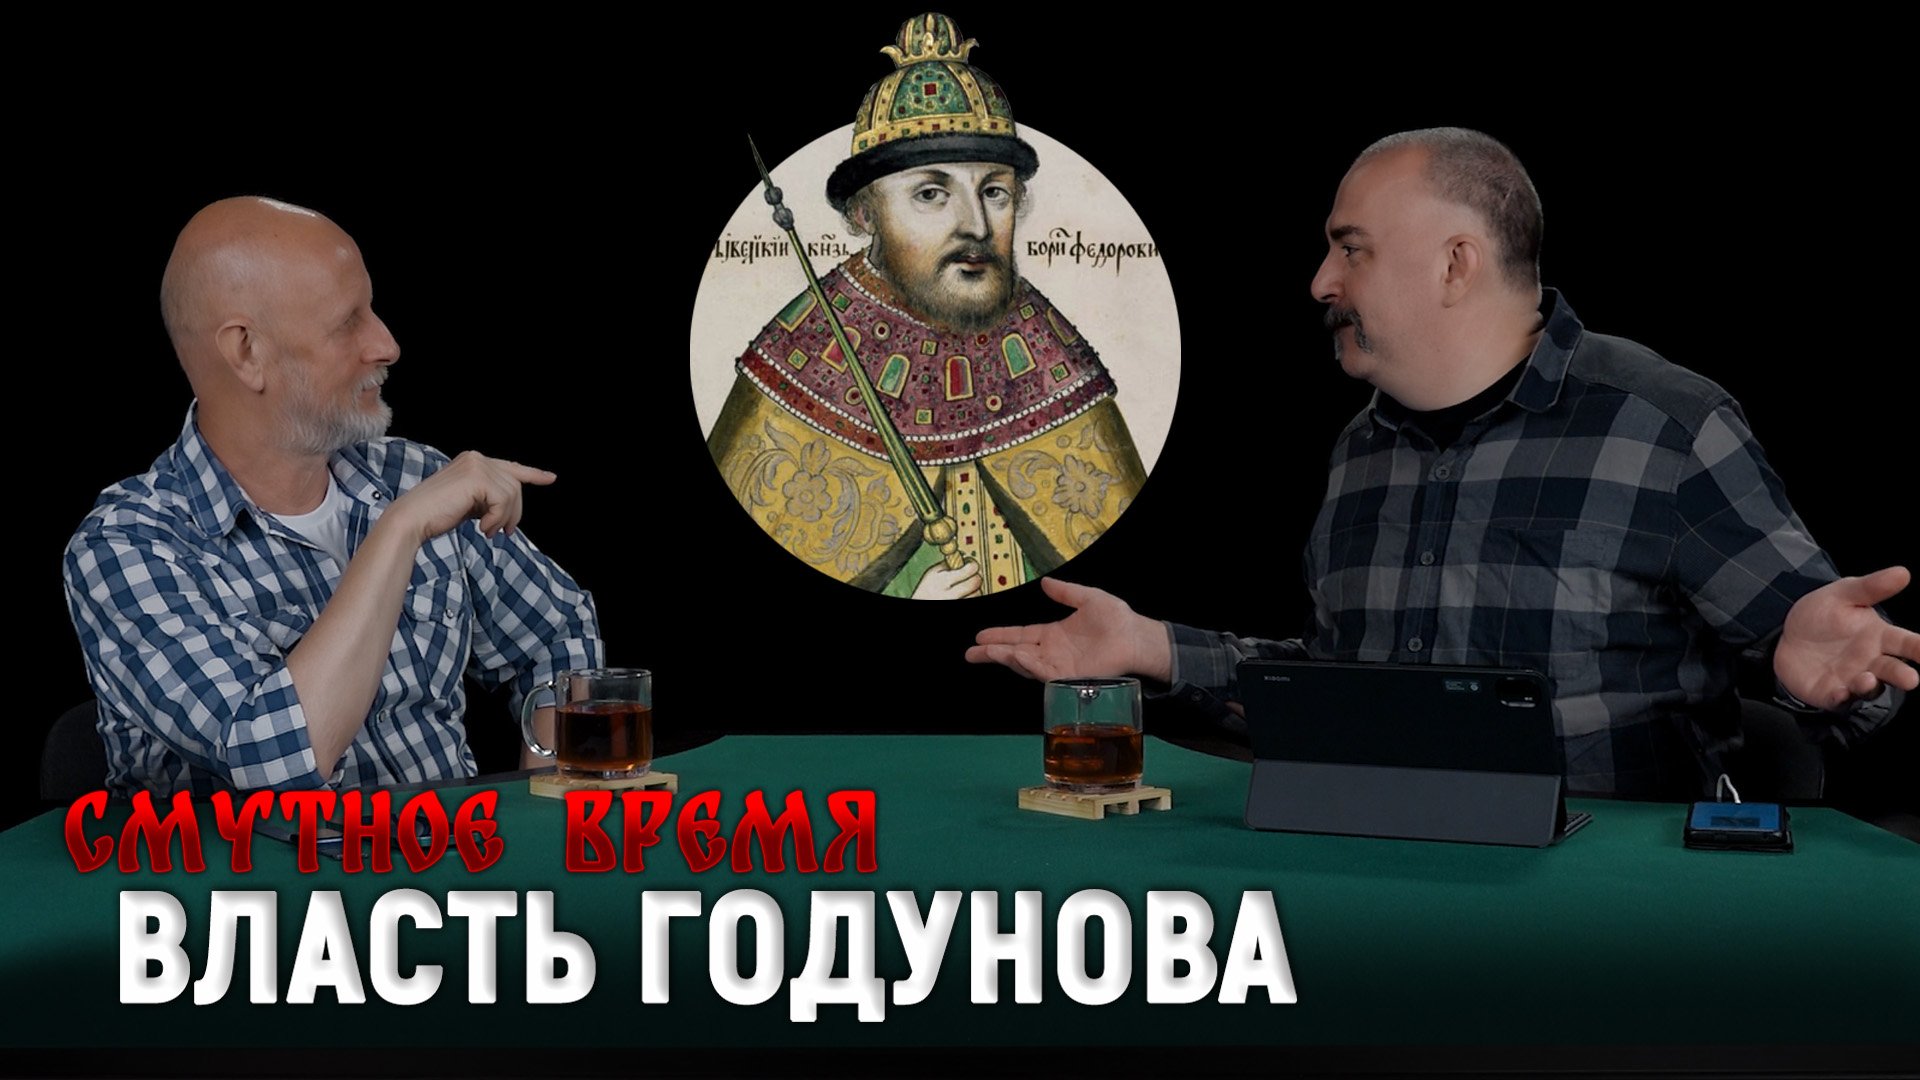 Смутное время 4: Борис Годунов, неспокойный Кавказ, освоение Сибири, погоня за соболем